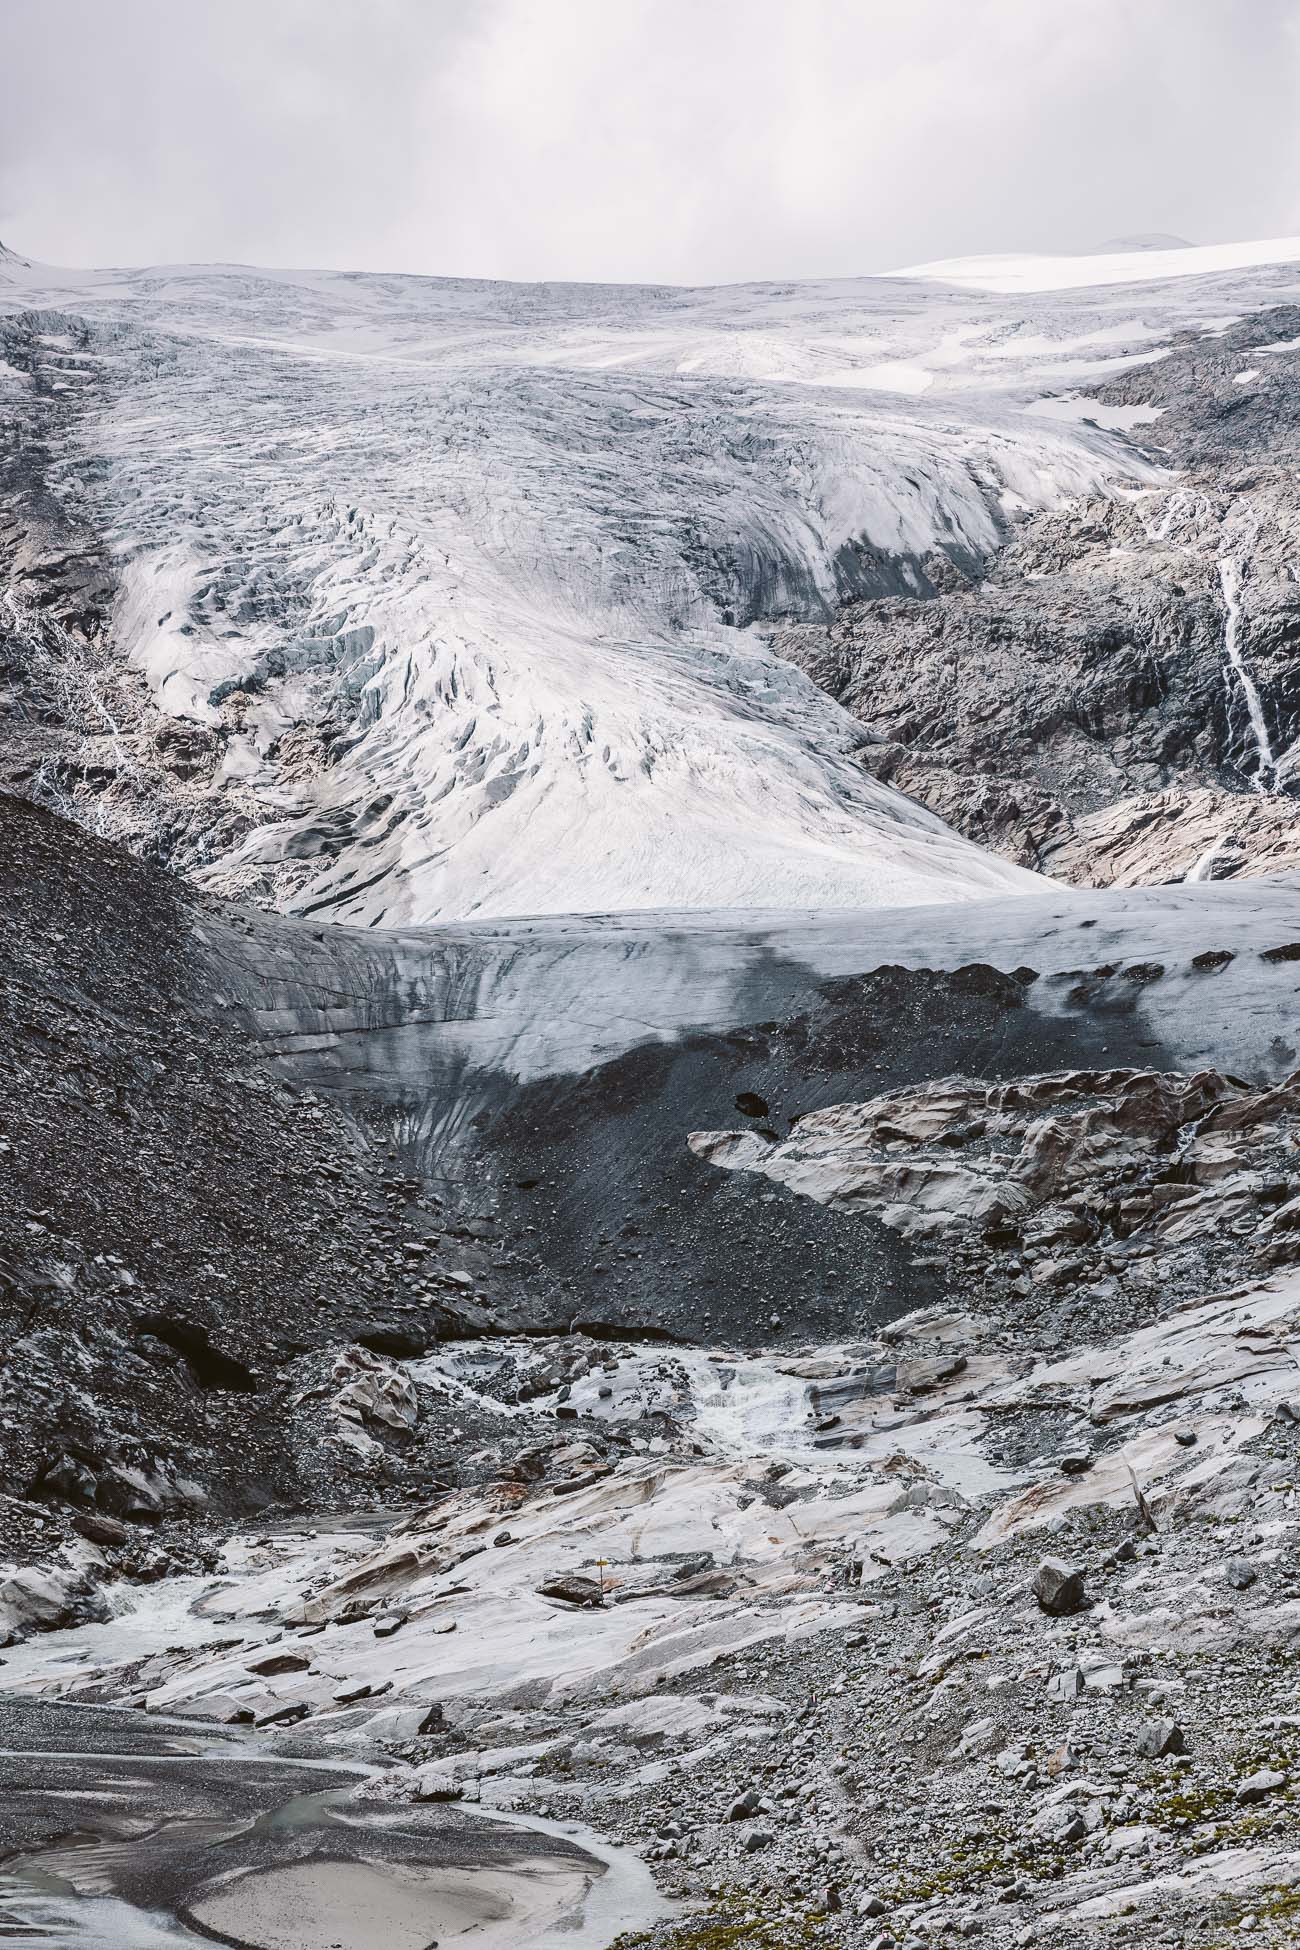 Schlatenkees Glacier